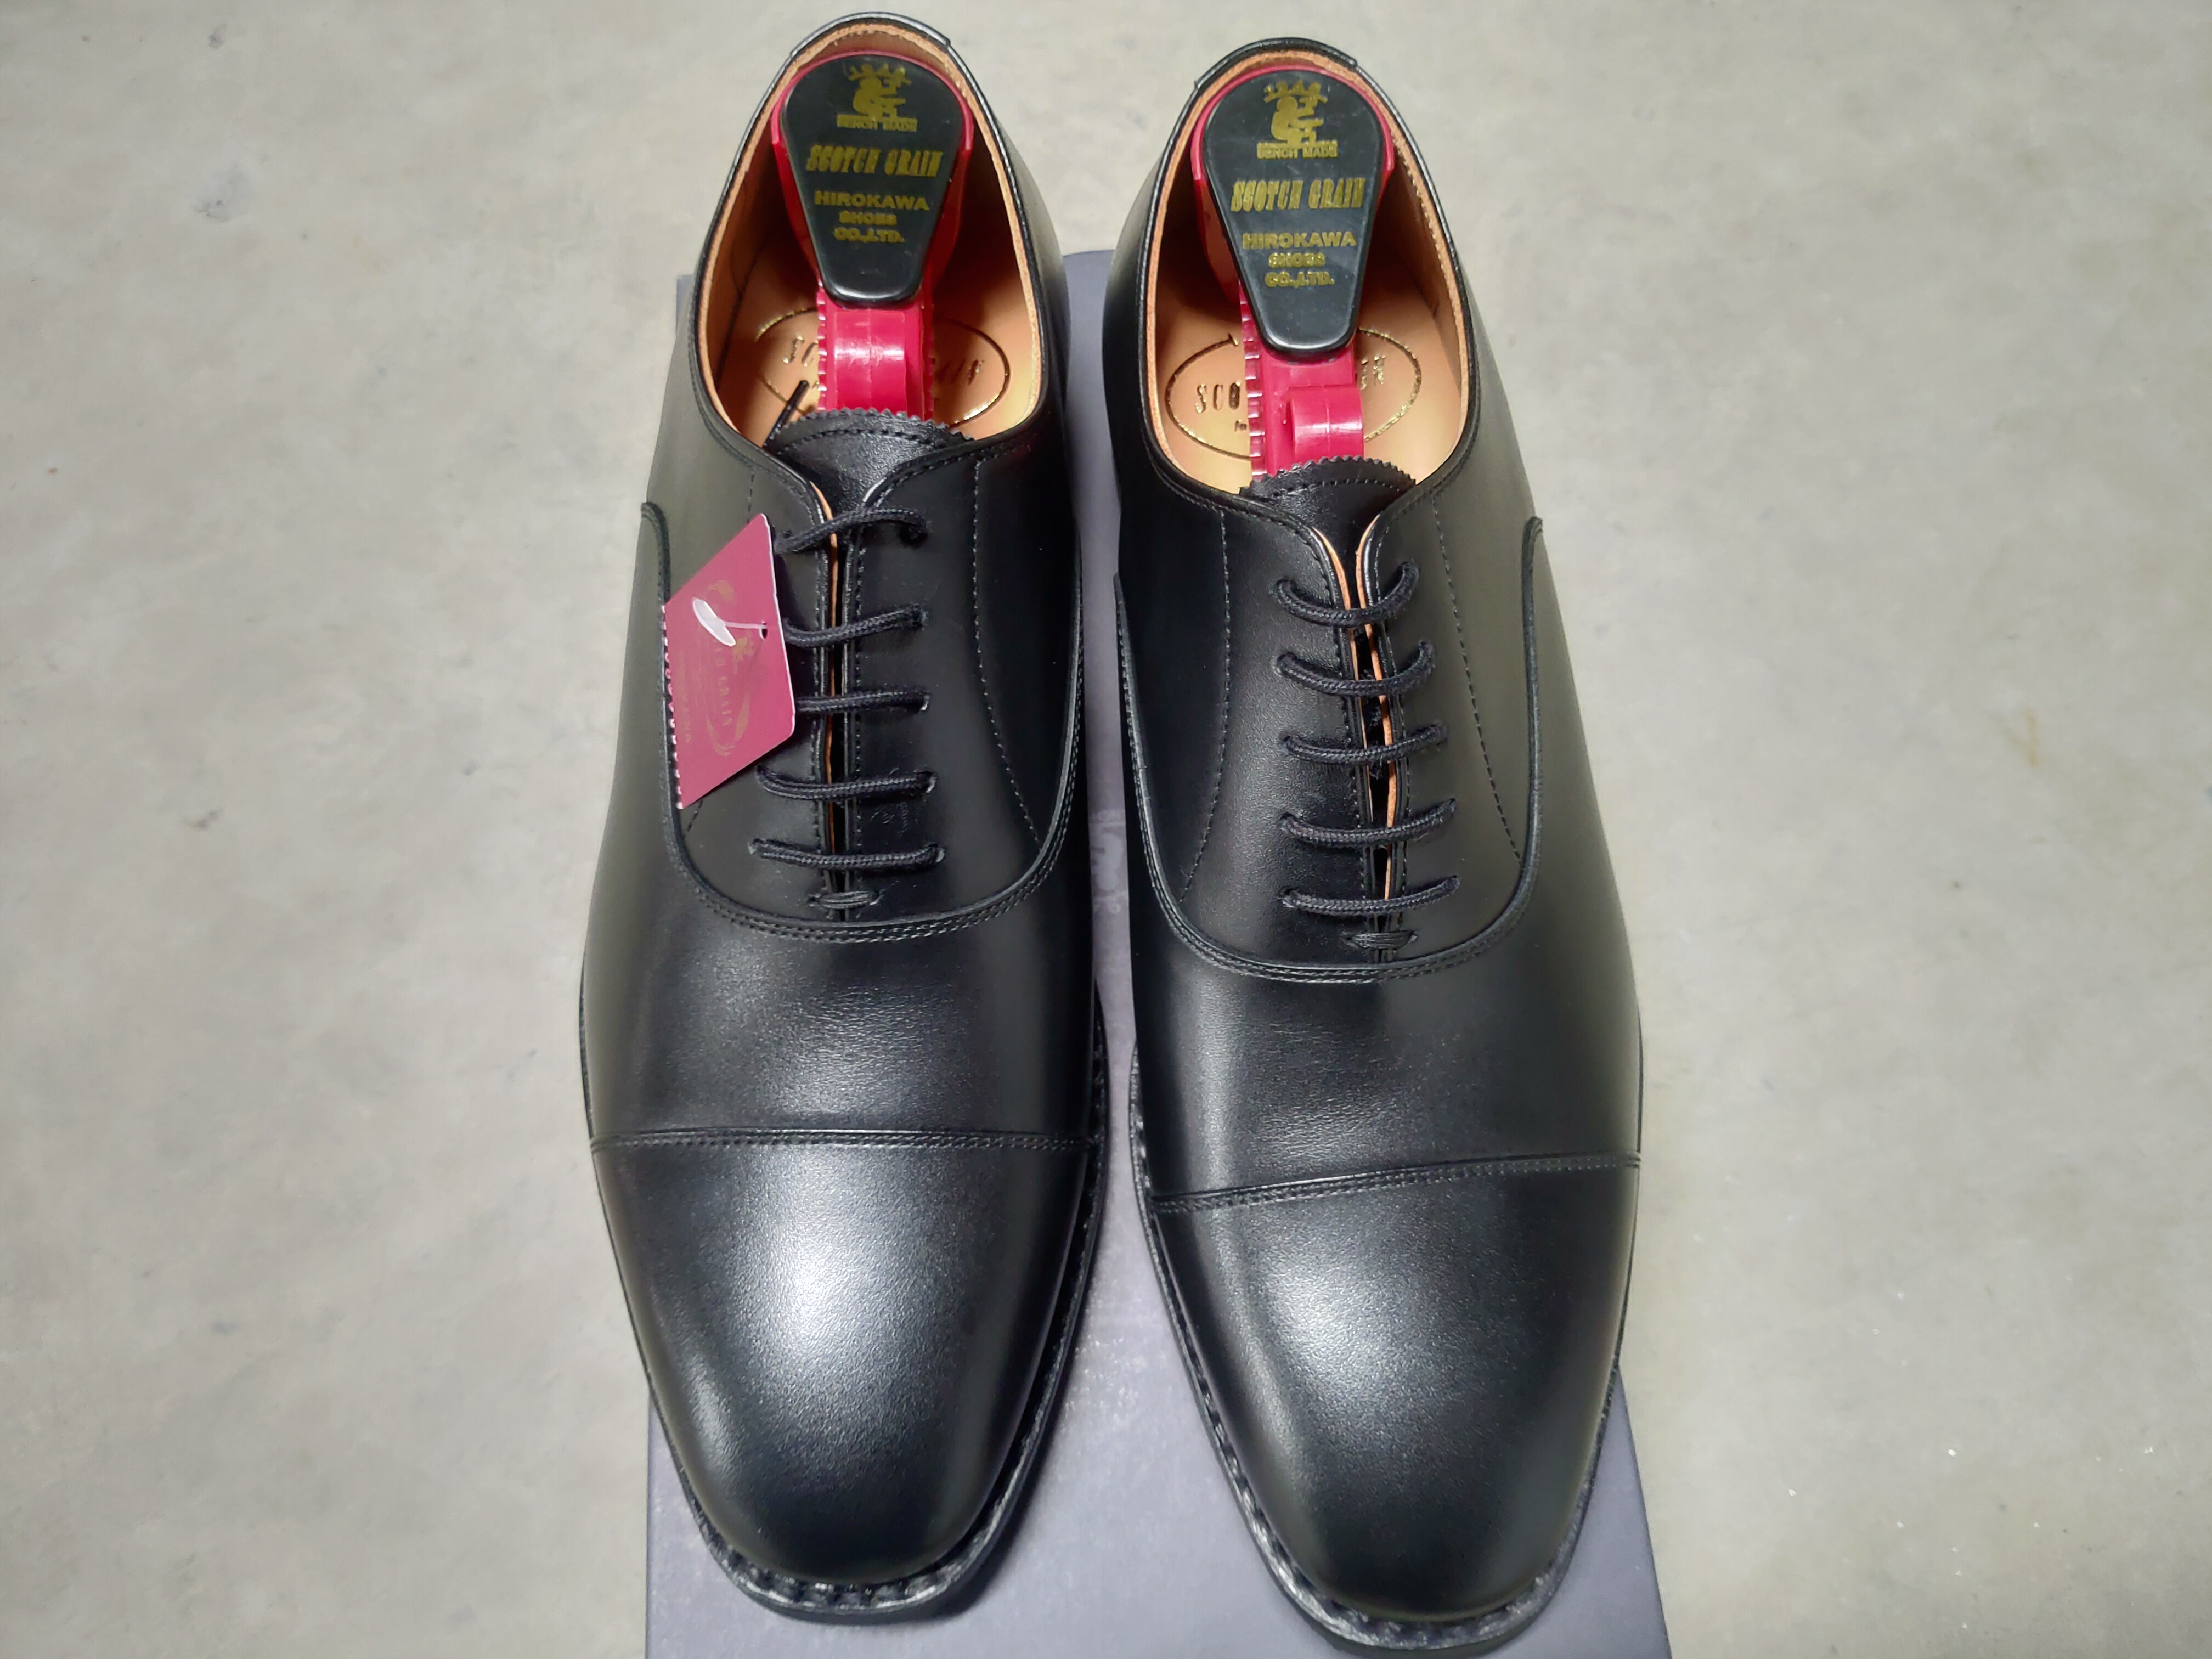 2018年11月開催 スコッチグレイン誕生40周年 ヒロカワ製靴特別セール in 有楽町に行ってきた | ゴンタのお気に入りライフ。